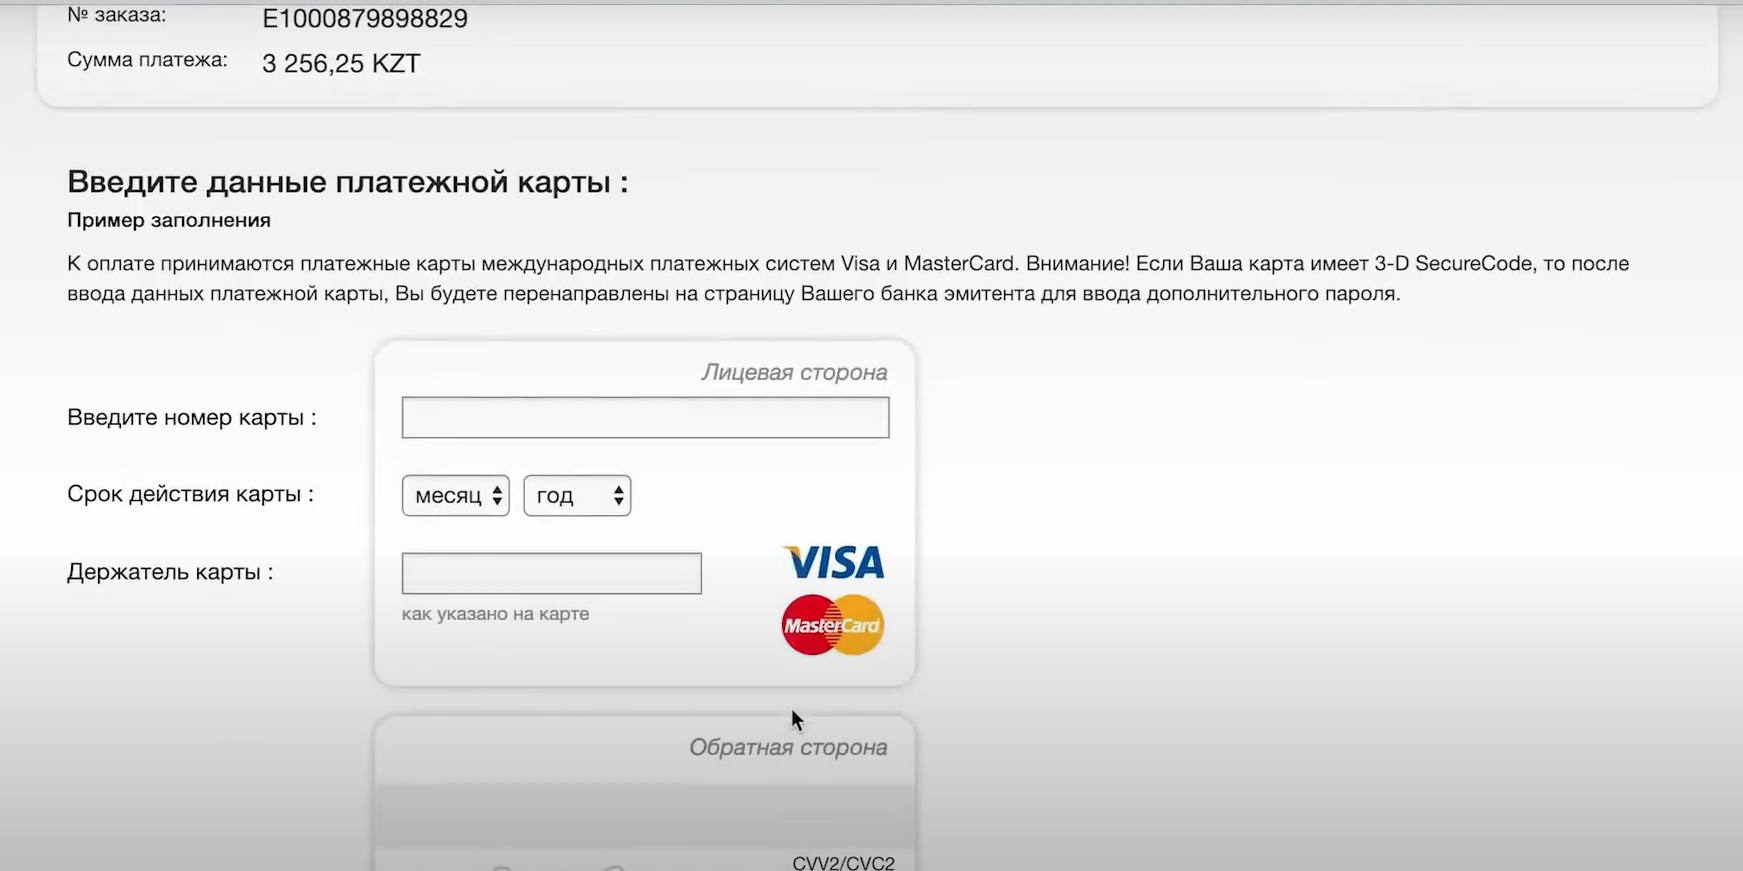 Замена водительского удостоверения онлайн через Egov.kz - инструкция